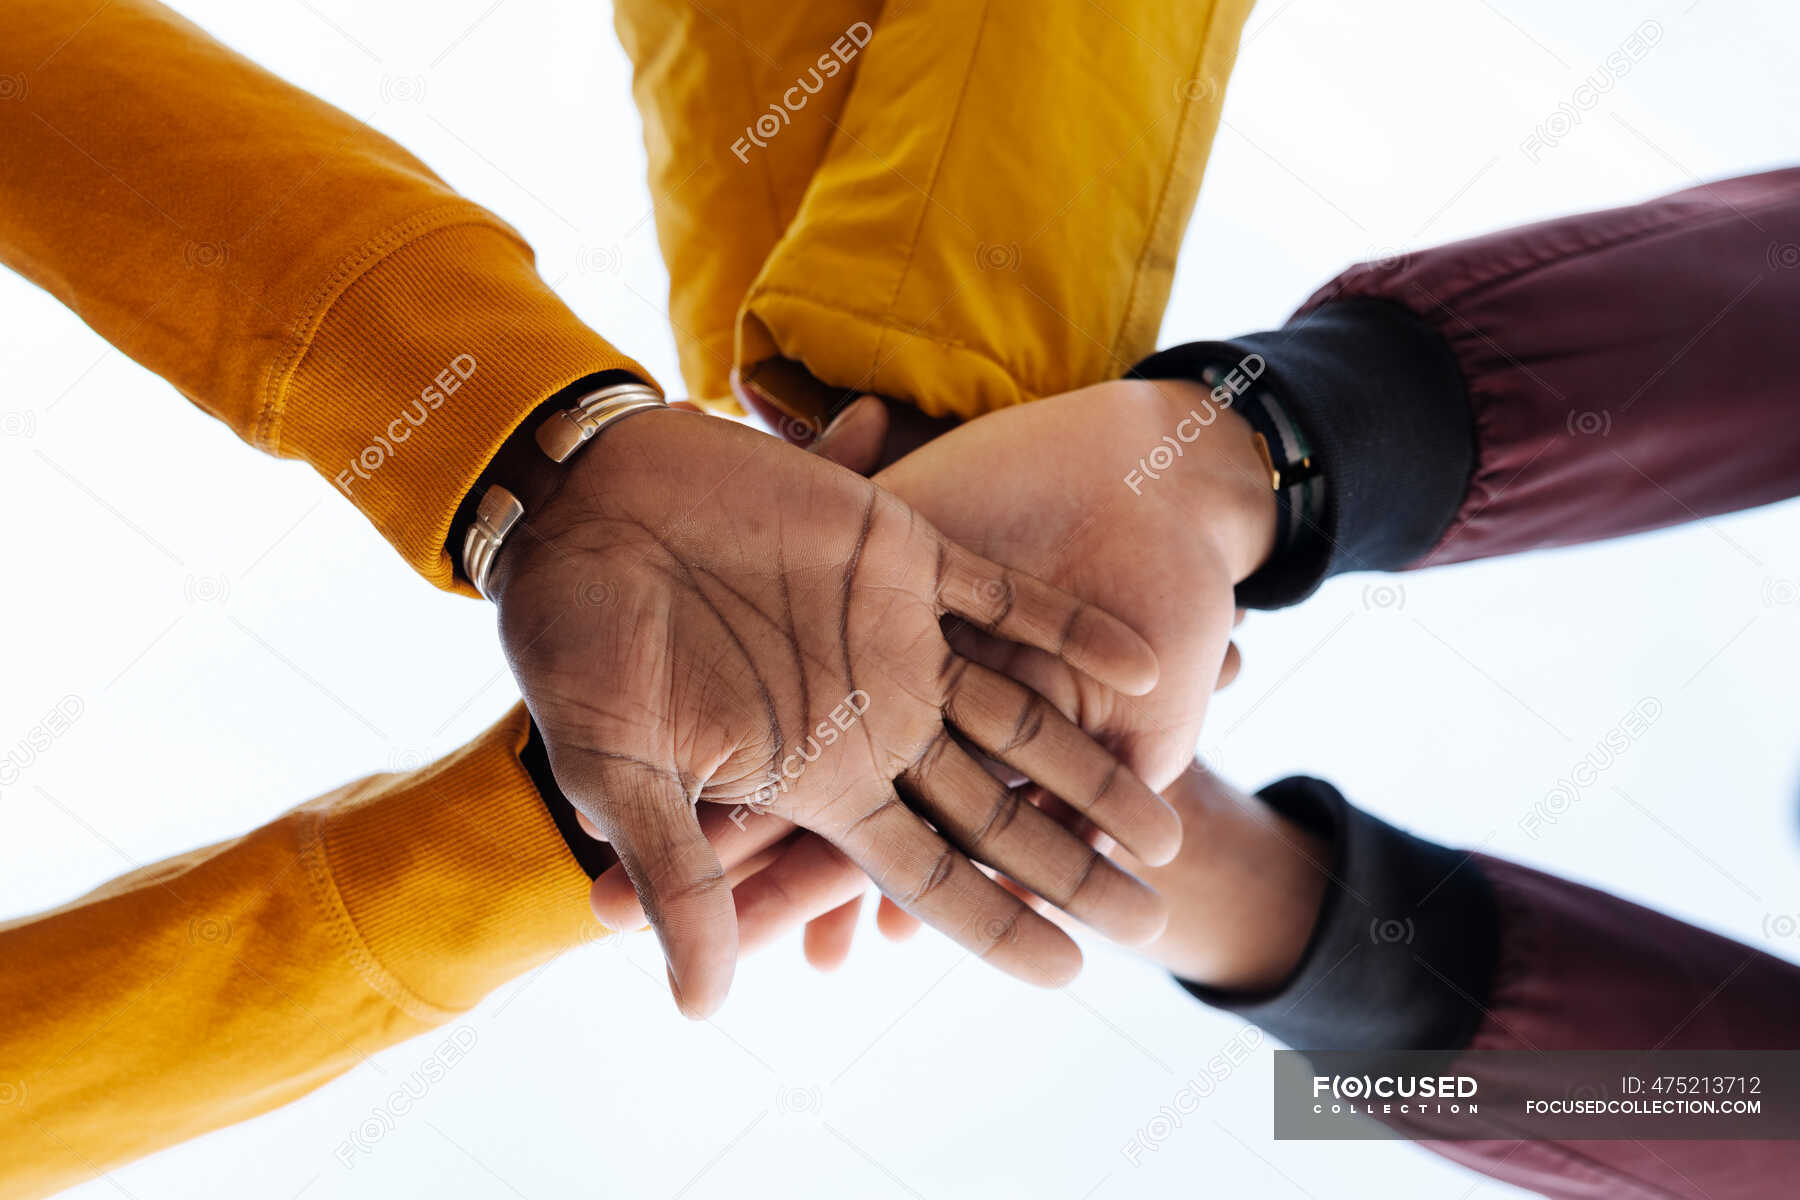 Рукопожатие друзей. Руки складывают друг на друга. Фото жмут руки друг другу хоккеисты. 10 друзей пожали друг другу руки сколько